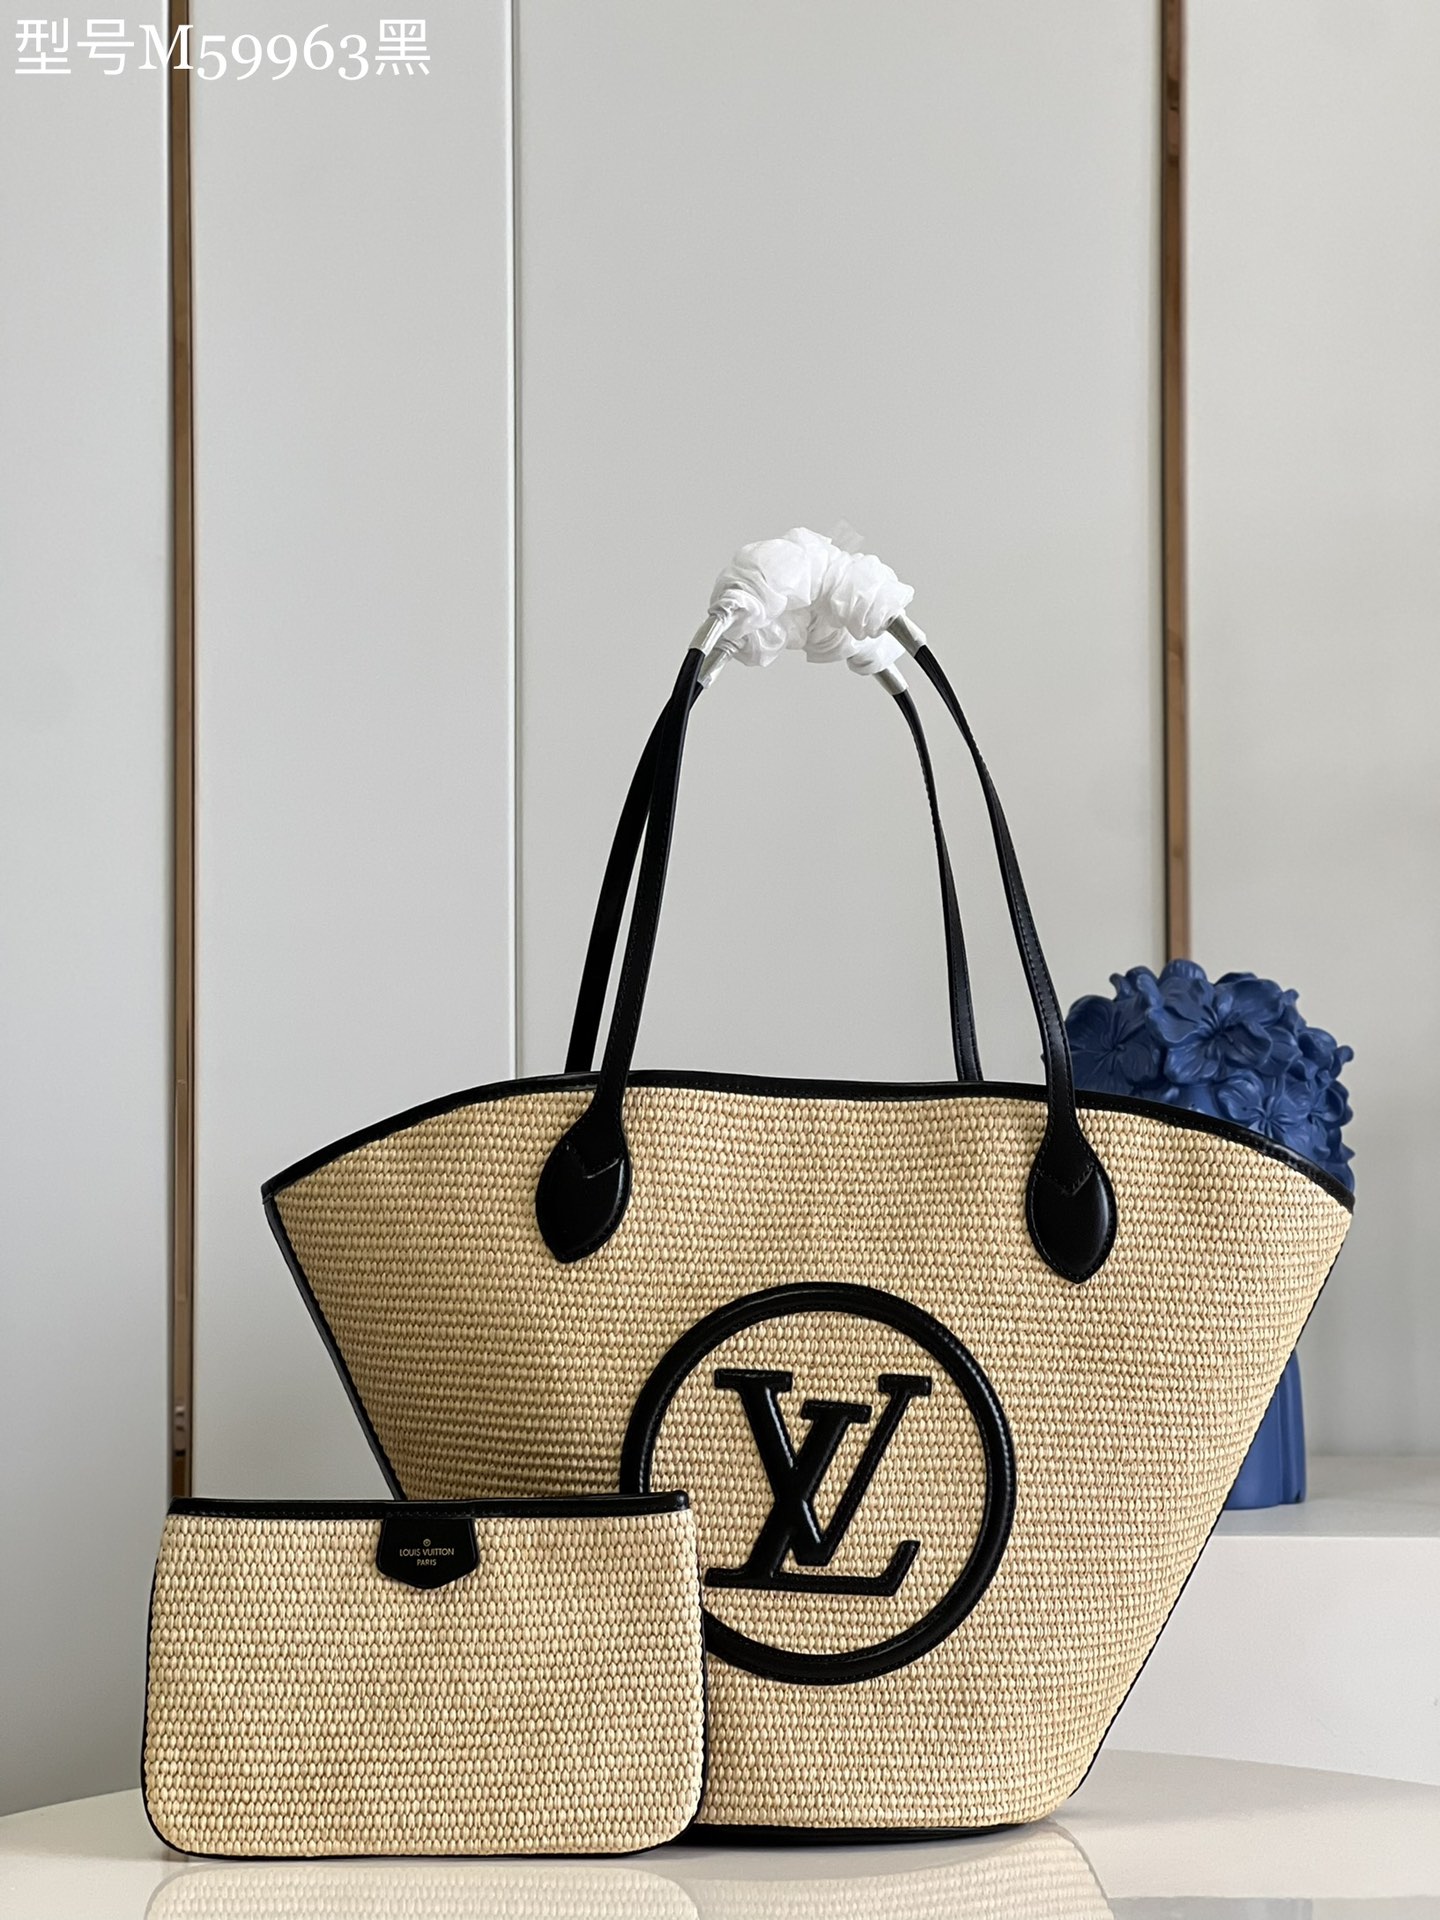 Louis Vuitton Bags Handbags Black Raffia Summer Collection Beach M59963